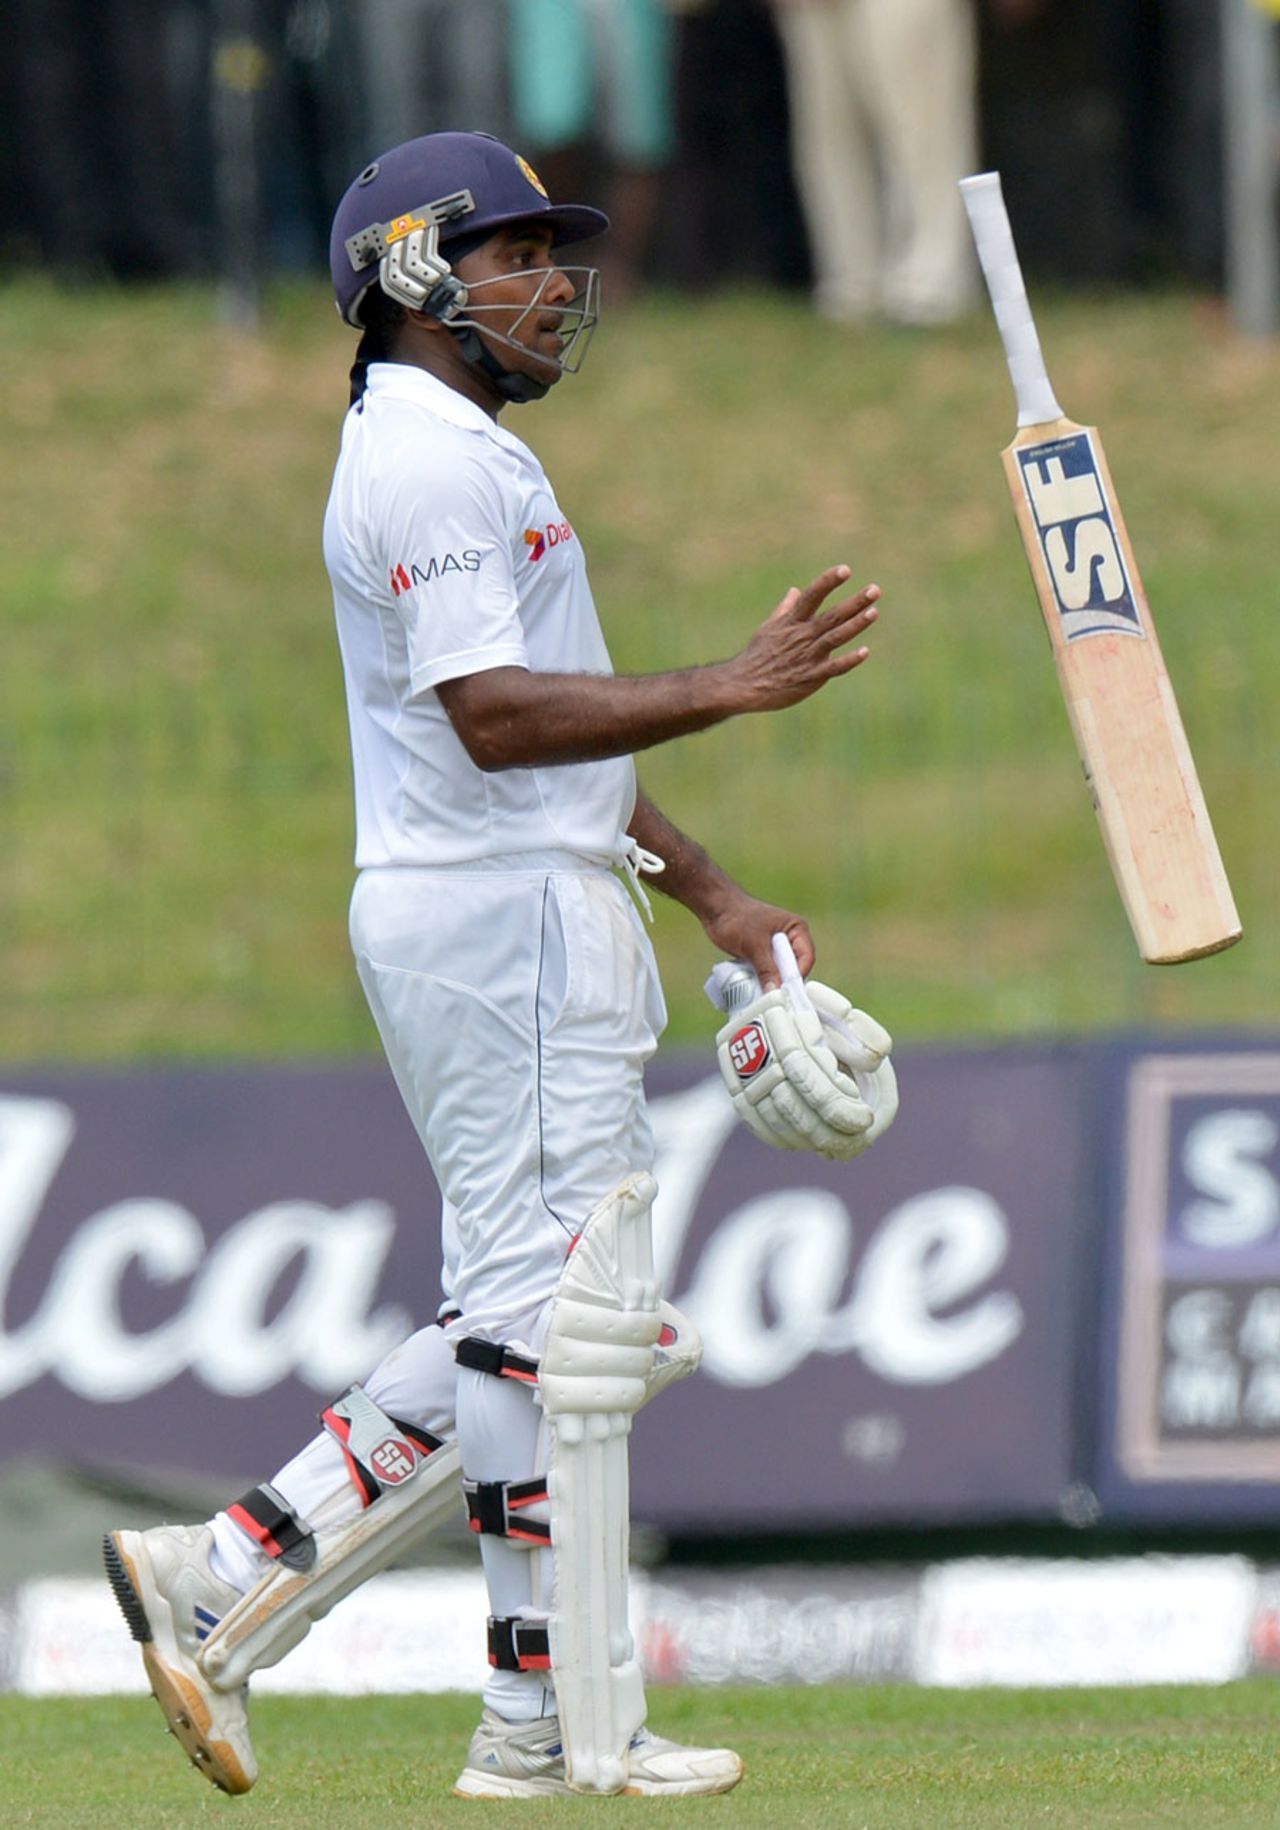 Mahela Jayawardene walks back to the pavilion, Sri Lanka v South Africa, 2nd Test, Colombo, 2nd day, July 25, 2014